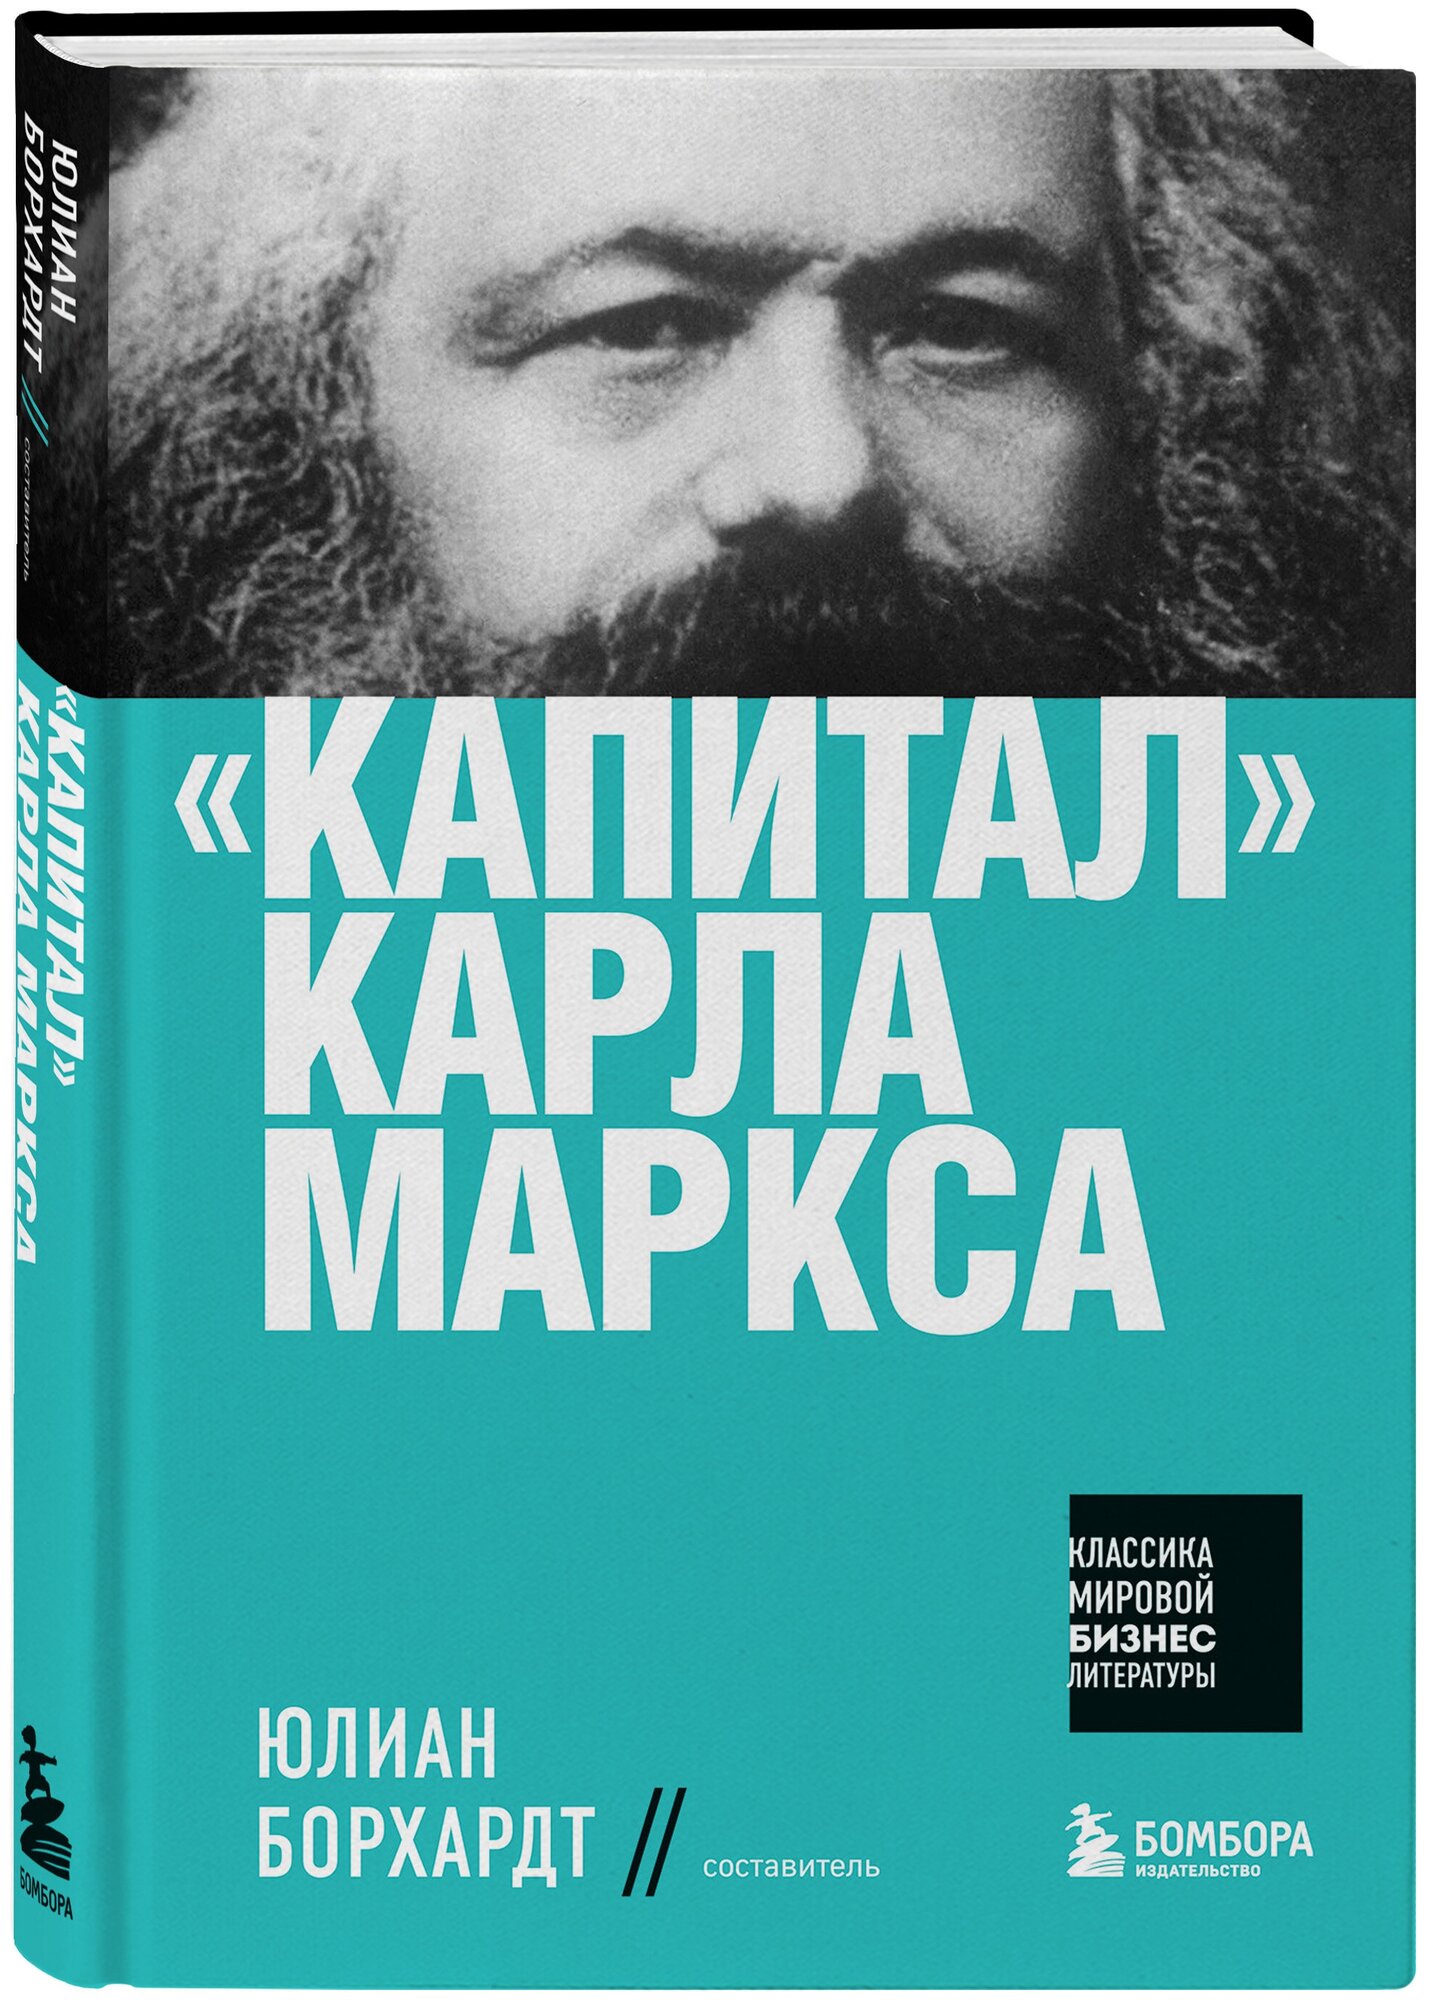 "Капитал" Карла Маркса - фото №1